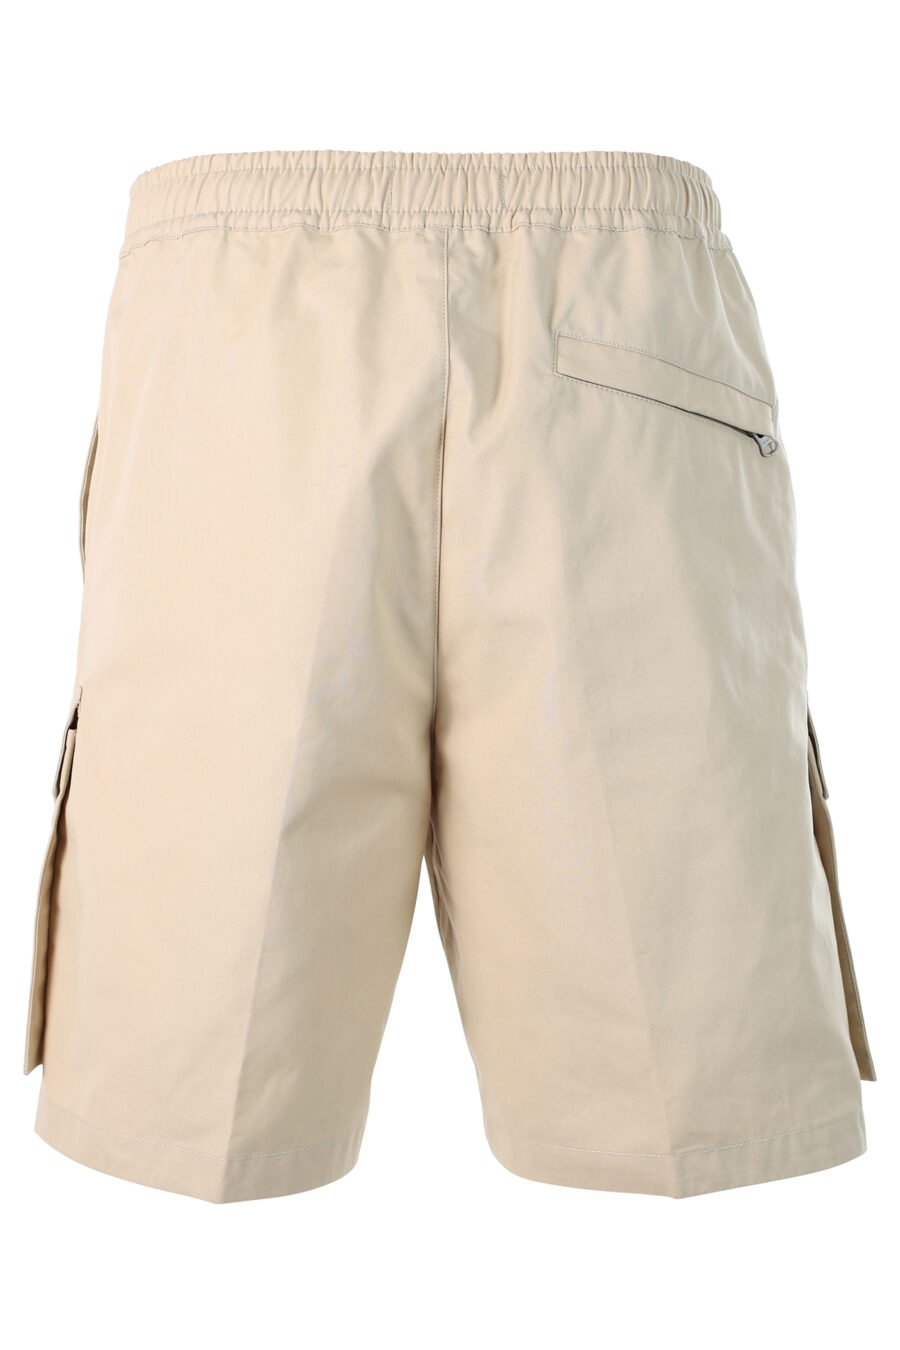 Pantalón beige corto estilo cargo con parche - 8052572538285 3